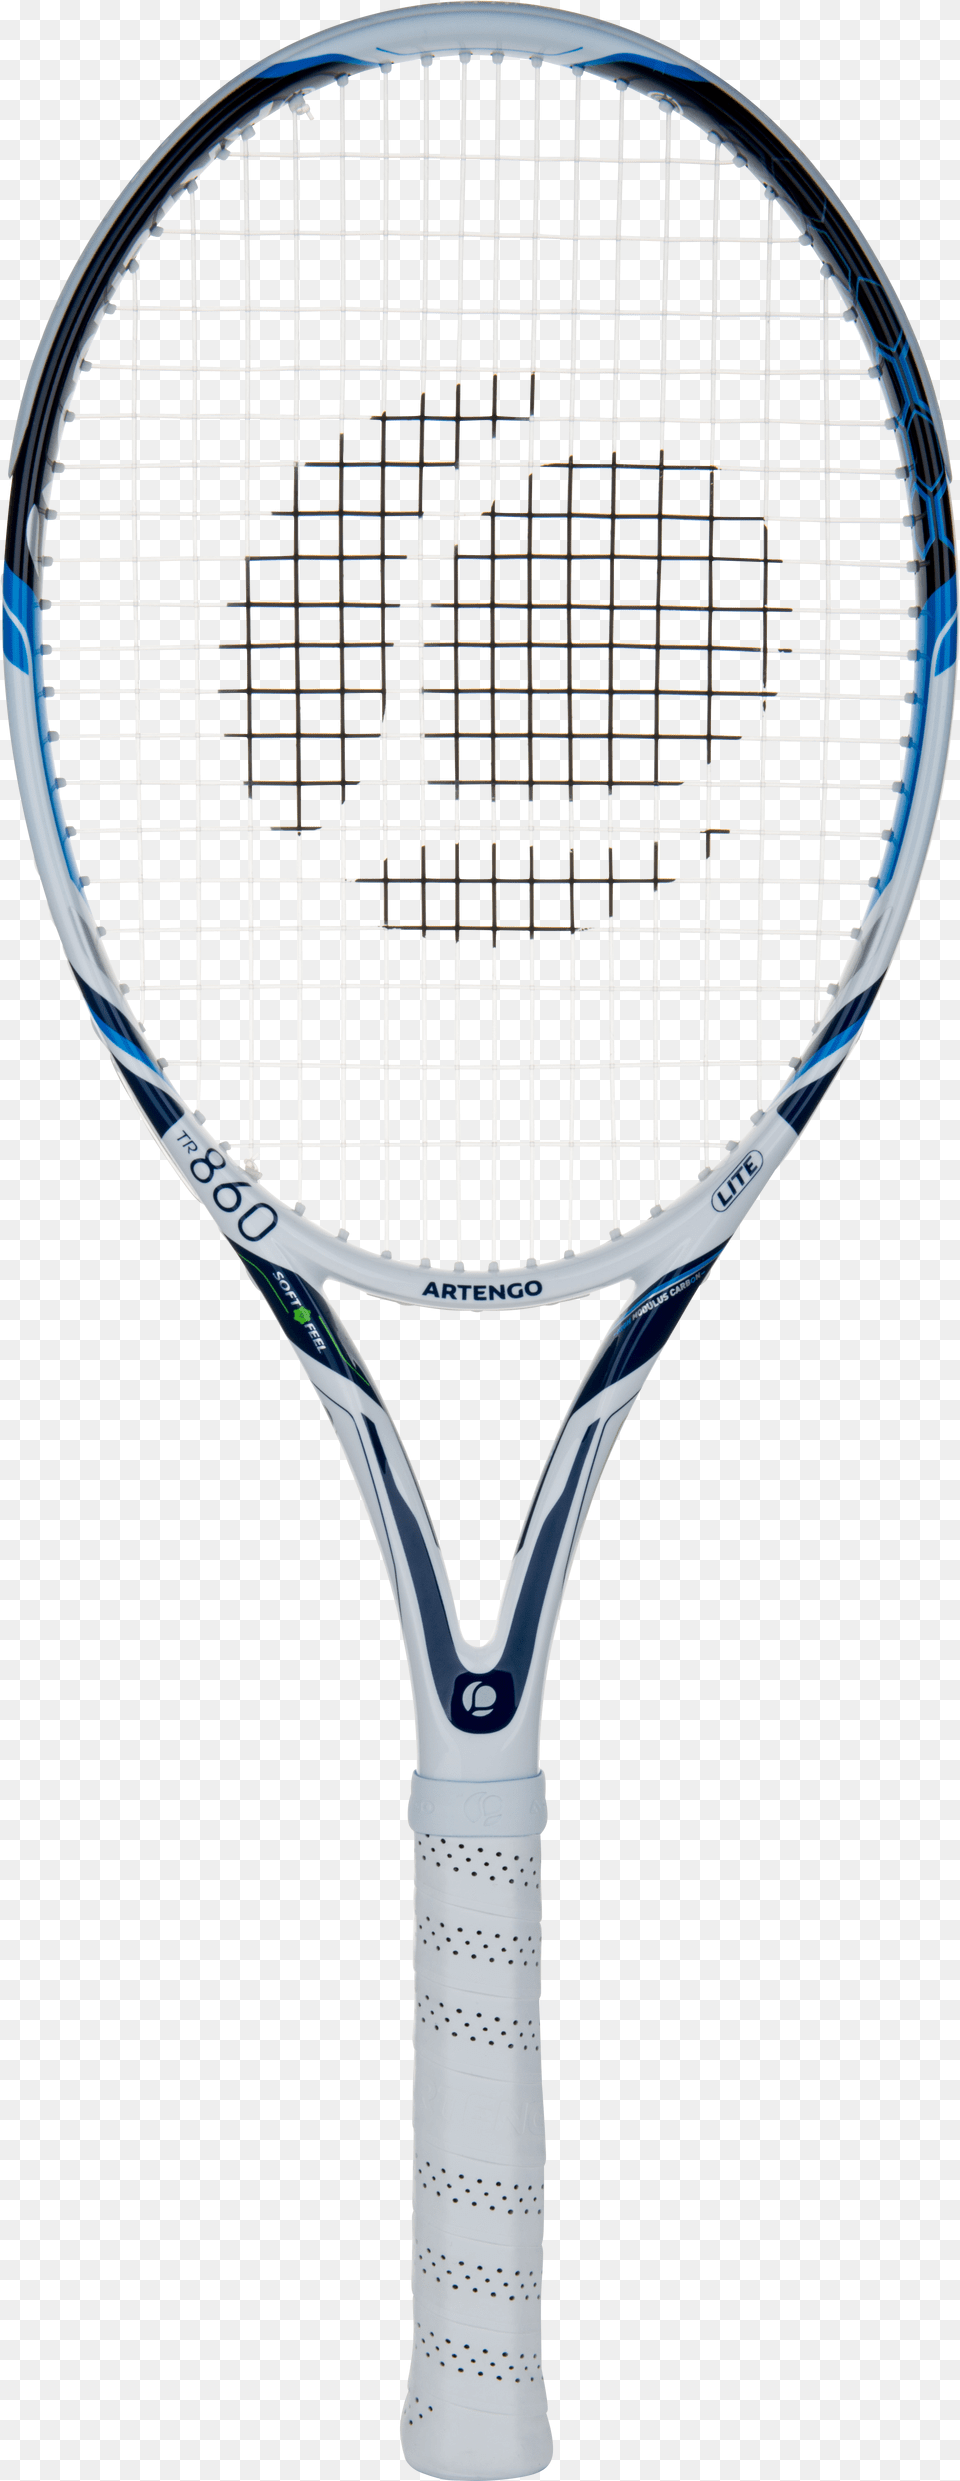 Artengo Tr860 Softfeel Tennis Racket Raqueta De Tenis Wilson Png Image